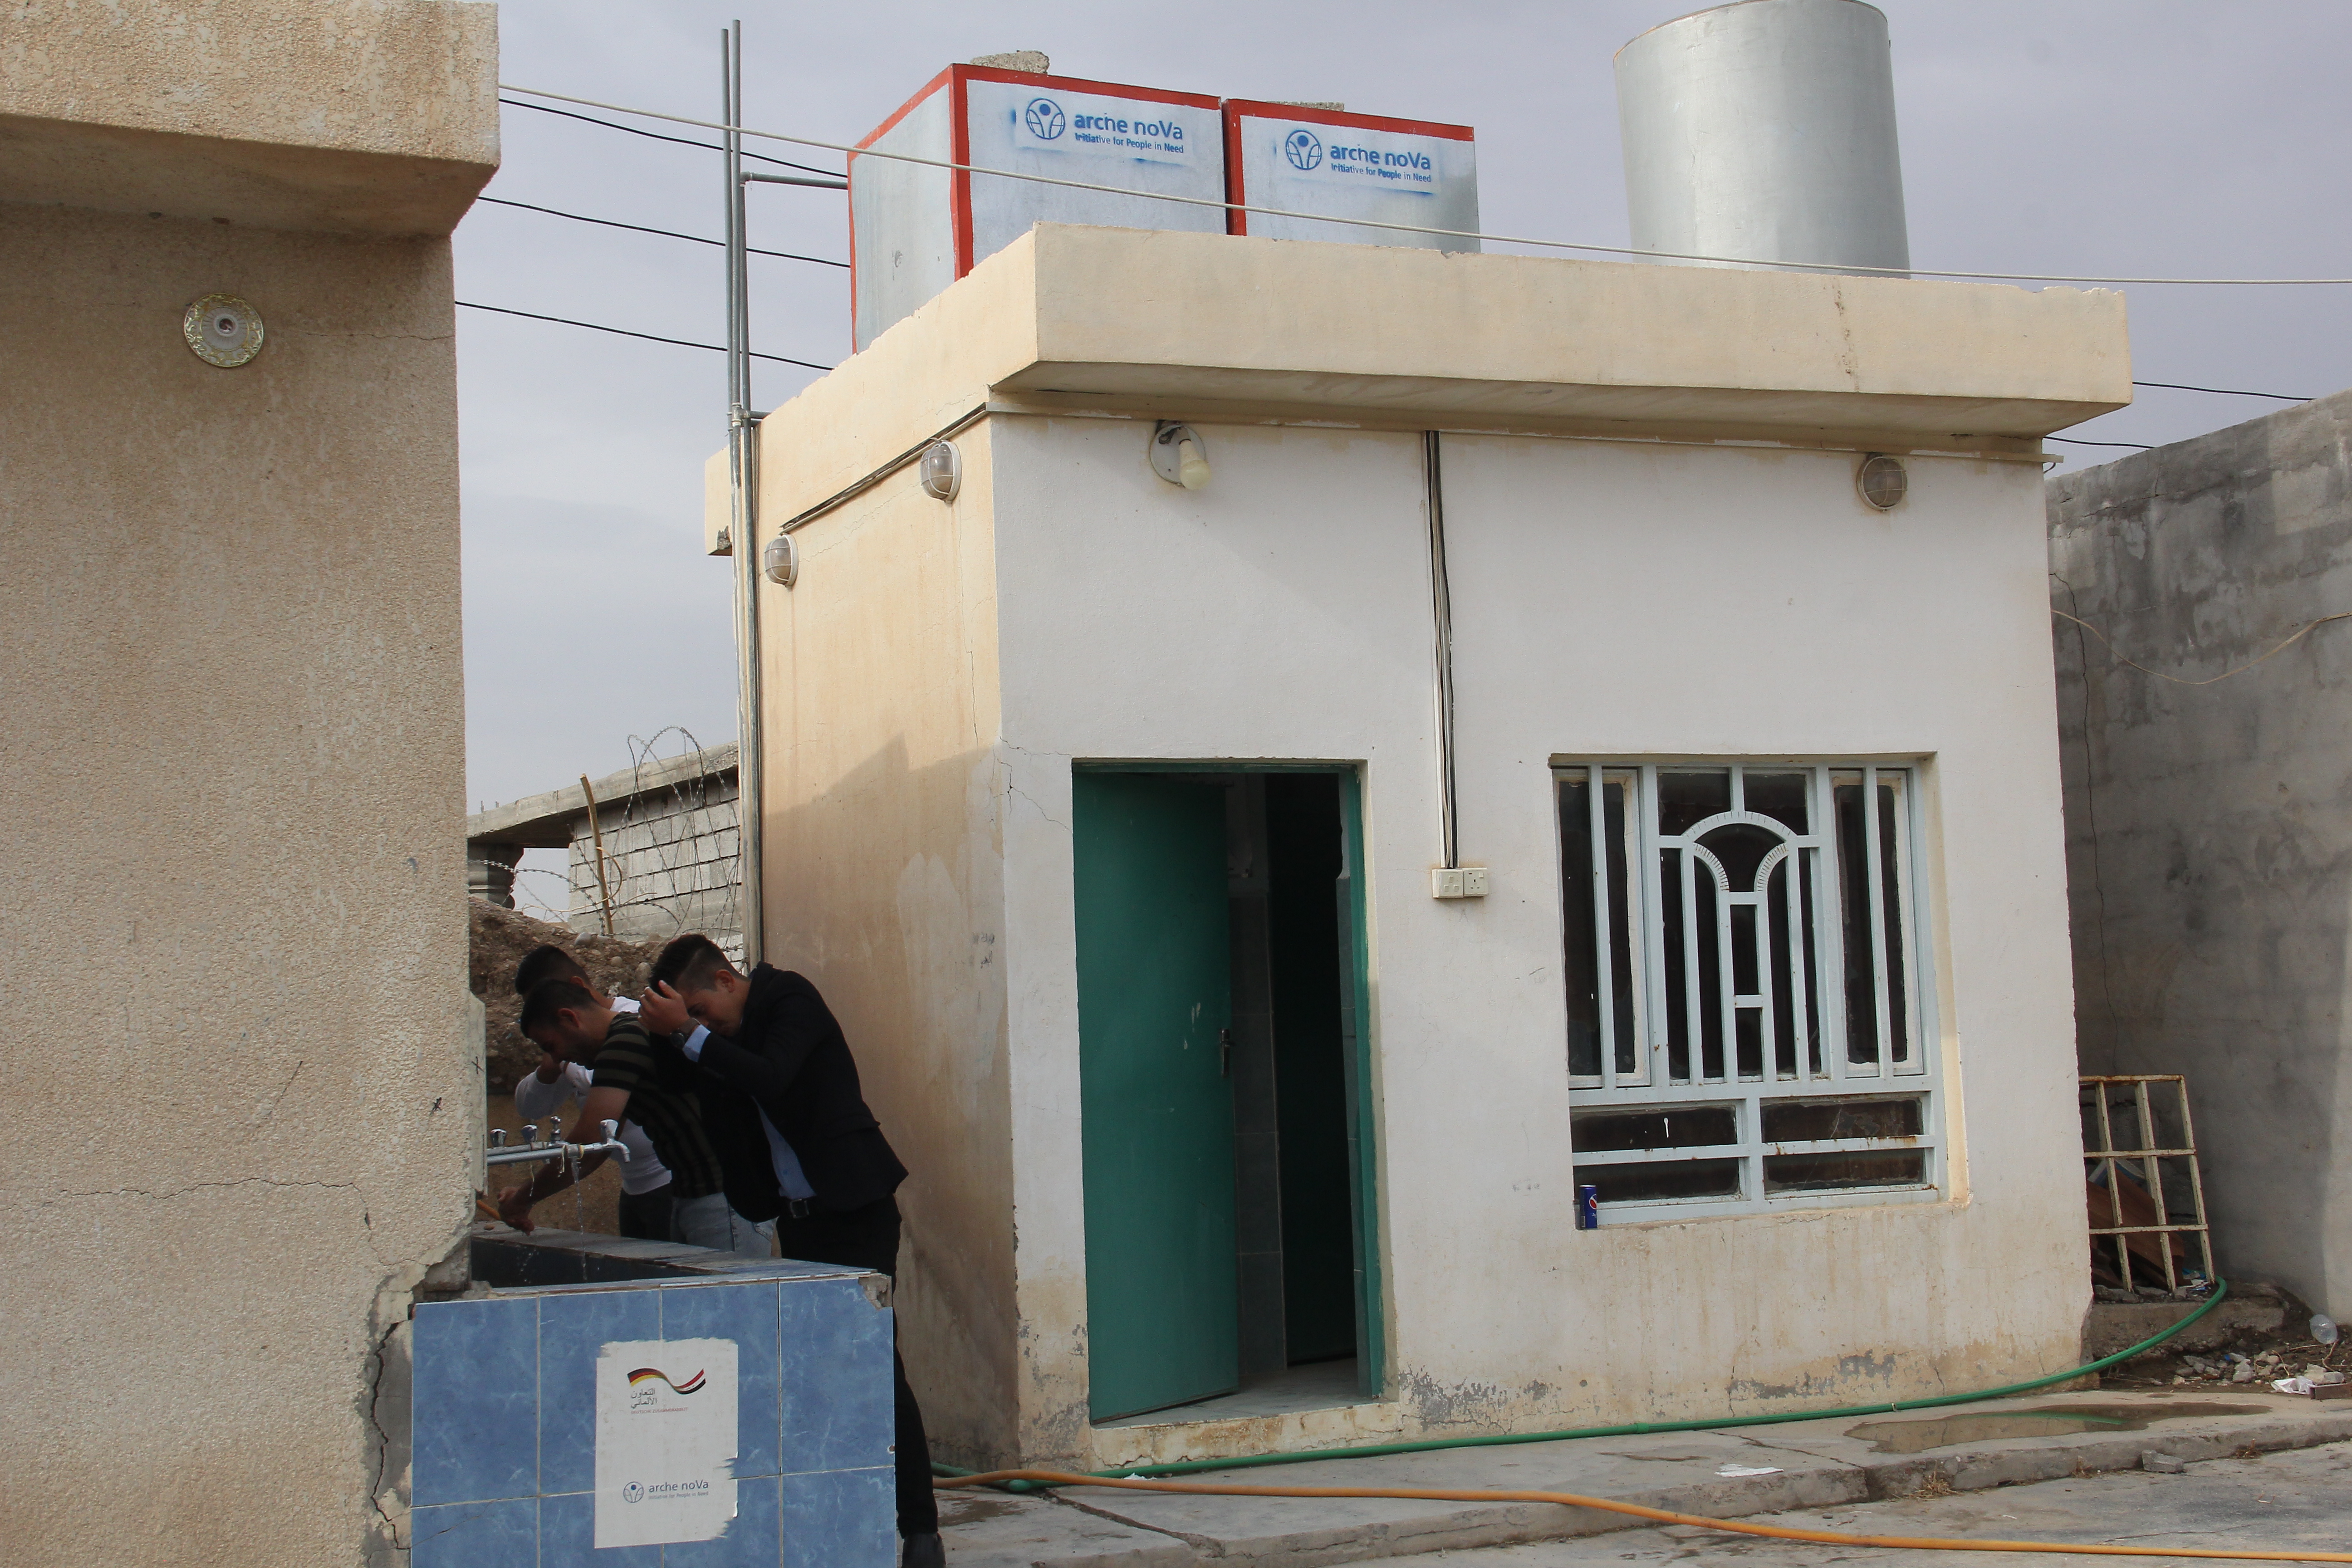 Sichere Toiletten bilden die Grundlage für Bildung für alle - wie hier in Qalaa, Irak